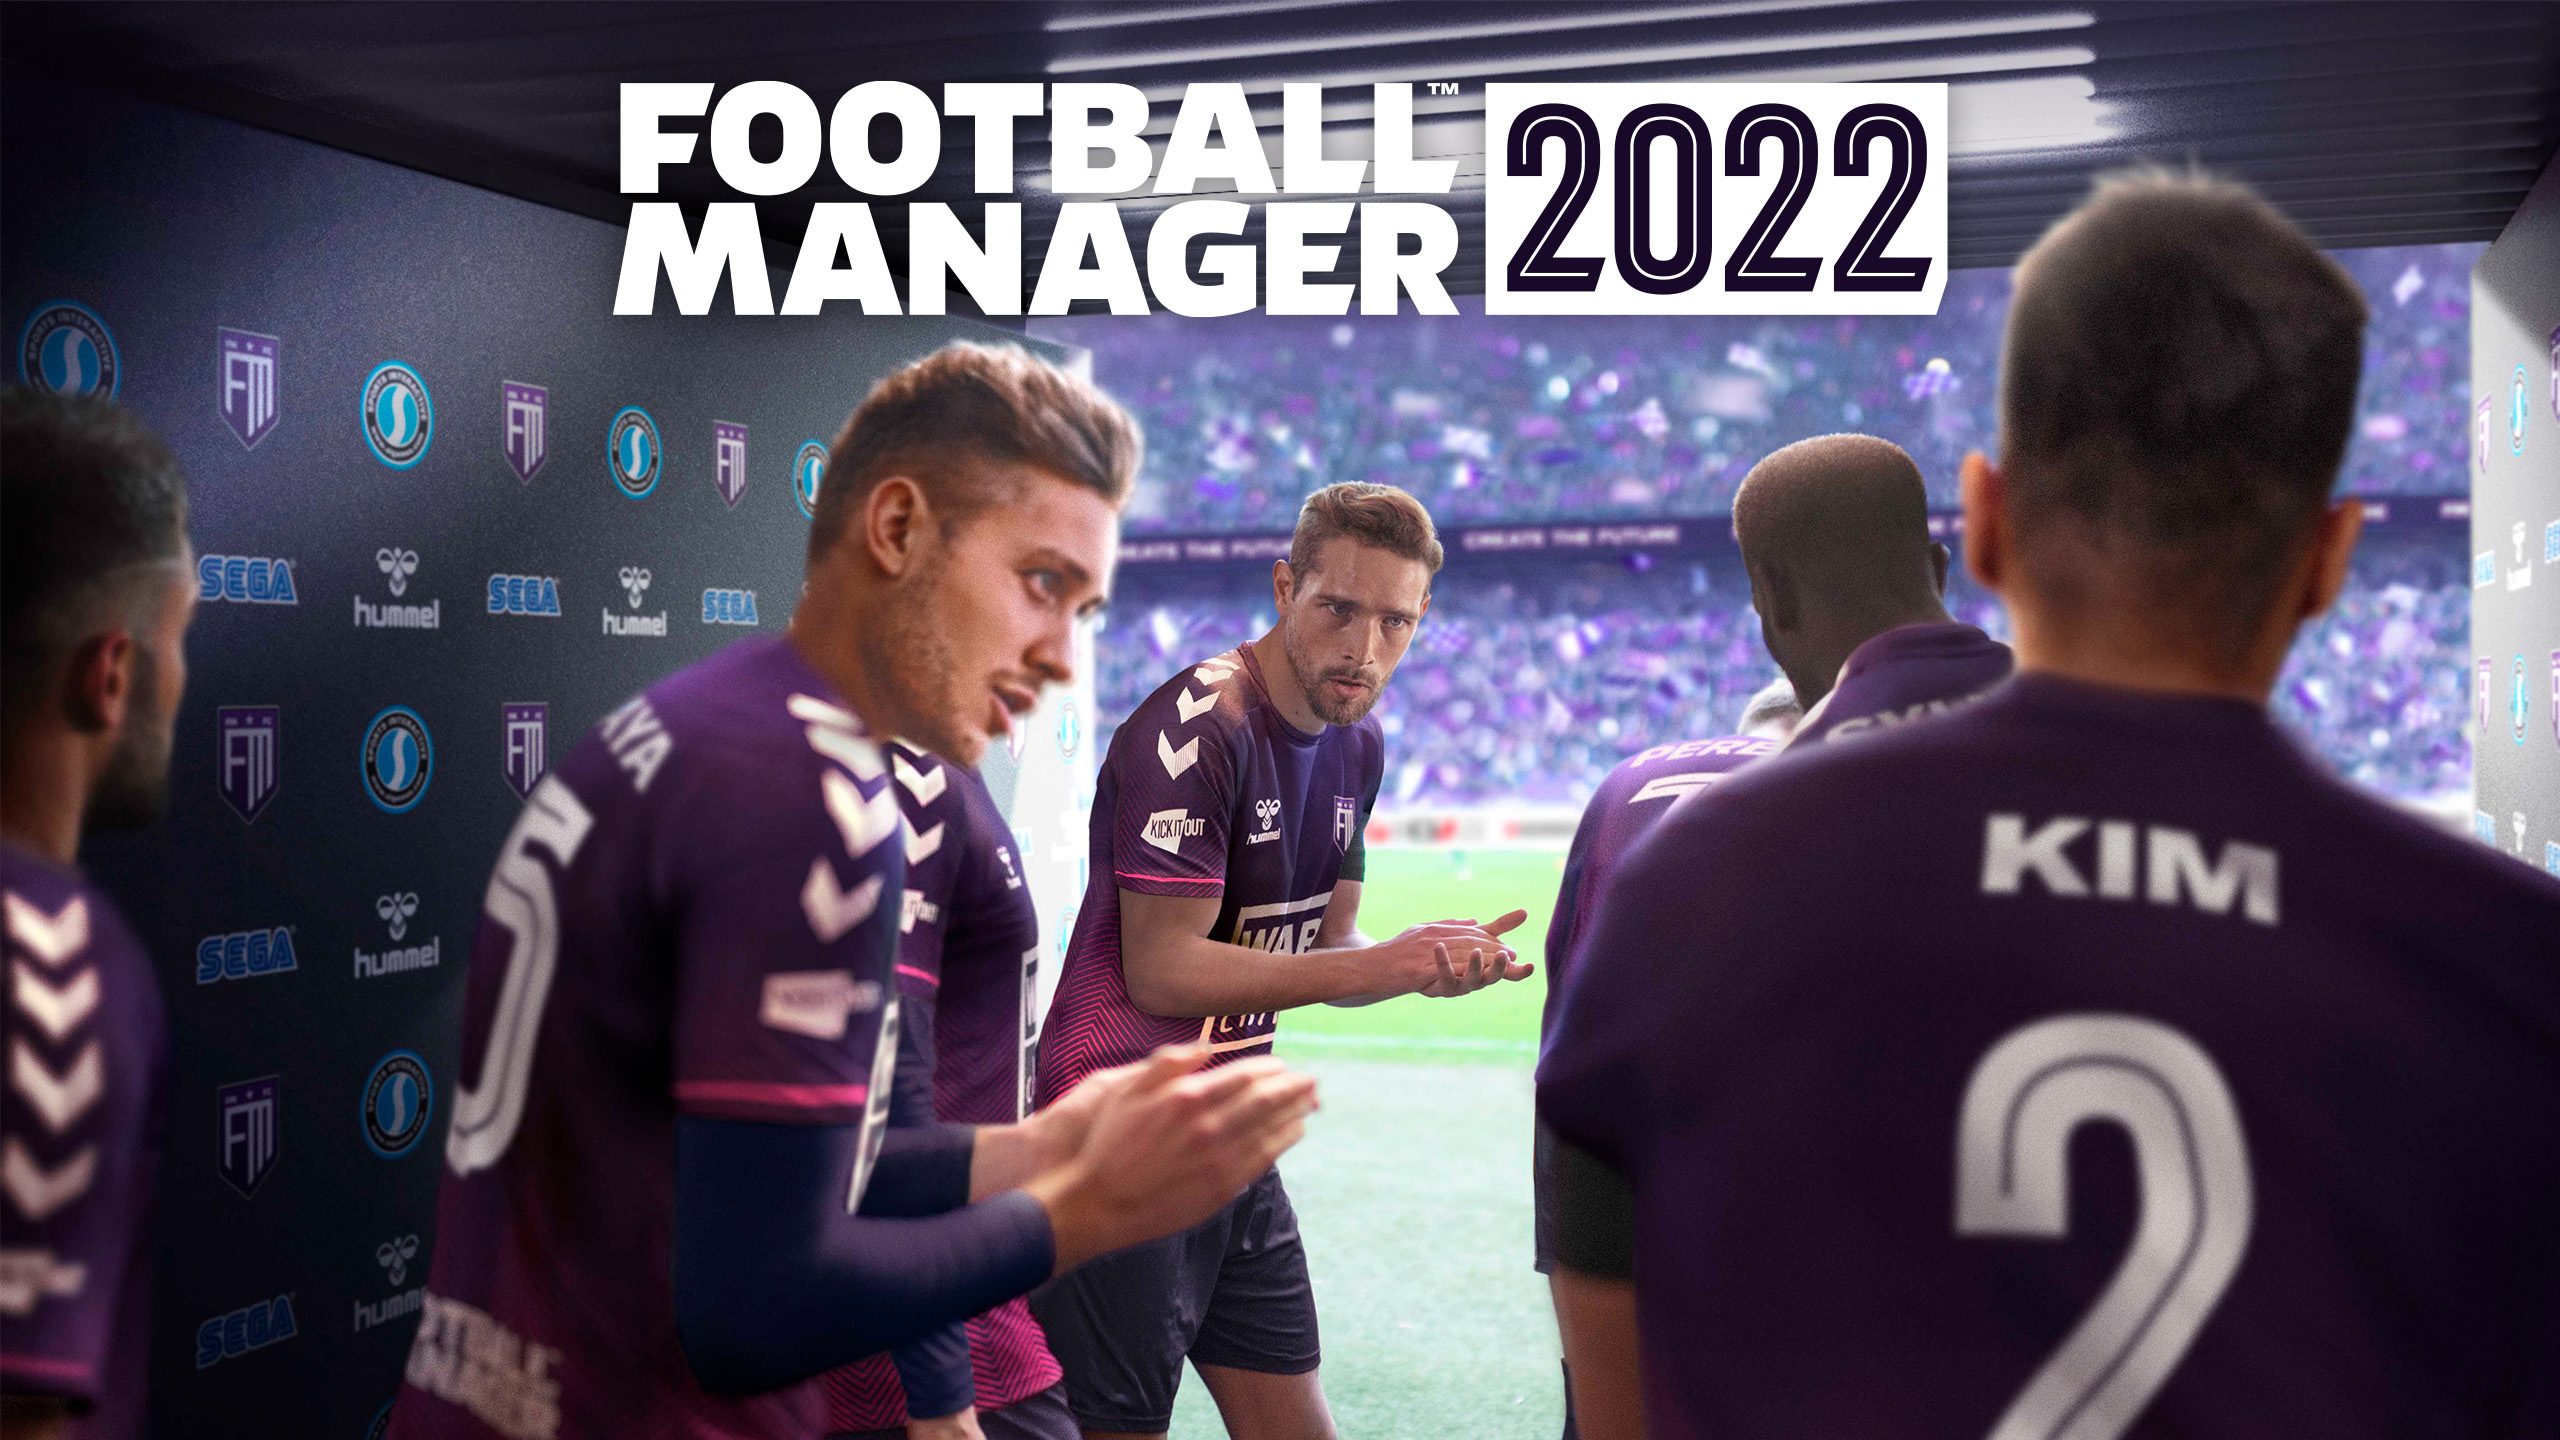 jalgpallijuht 2022 kuulutab välja uue mängumootori.